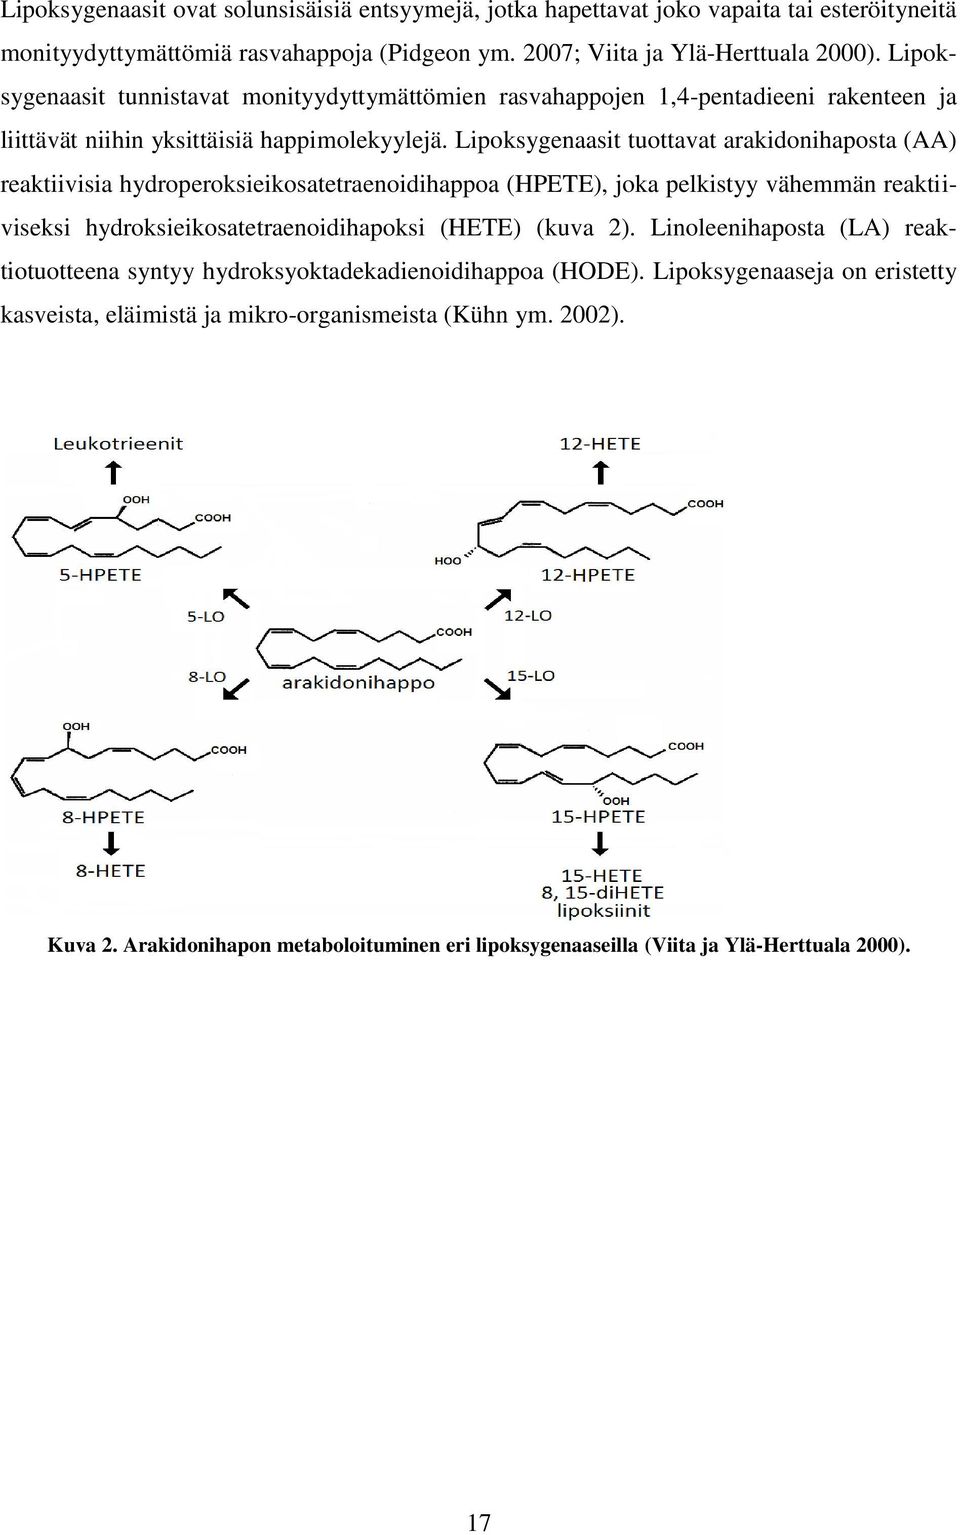 Lipoksygenaasit tuottavat arakidonihaposta (AA) reaktiivisia hydroperoksieikosatetraenoidihappoa (HPETE), joka pelkistyy vähemmän reaktiiviseksi hydroksieikosatetraenoidihapoksi (HETE) (kuva 2).